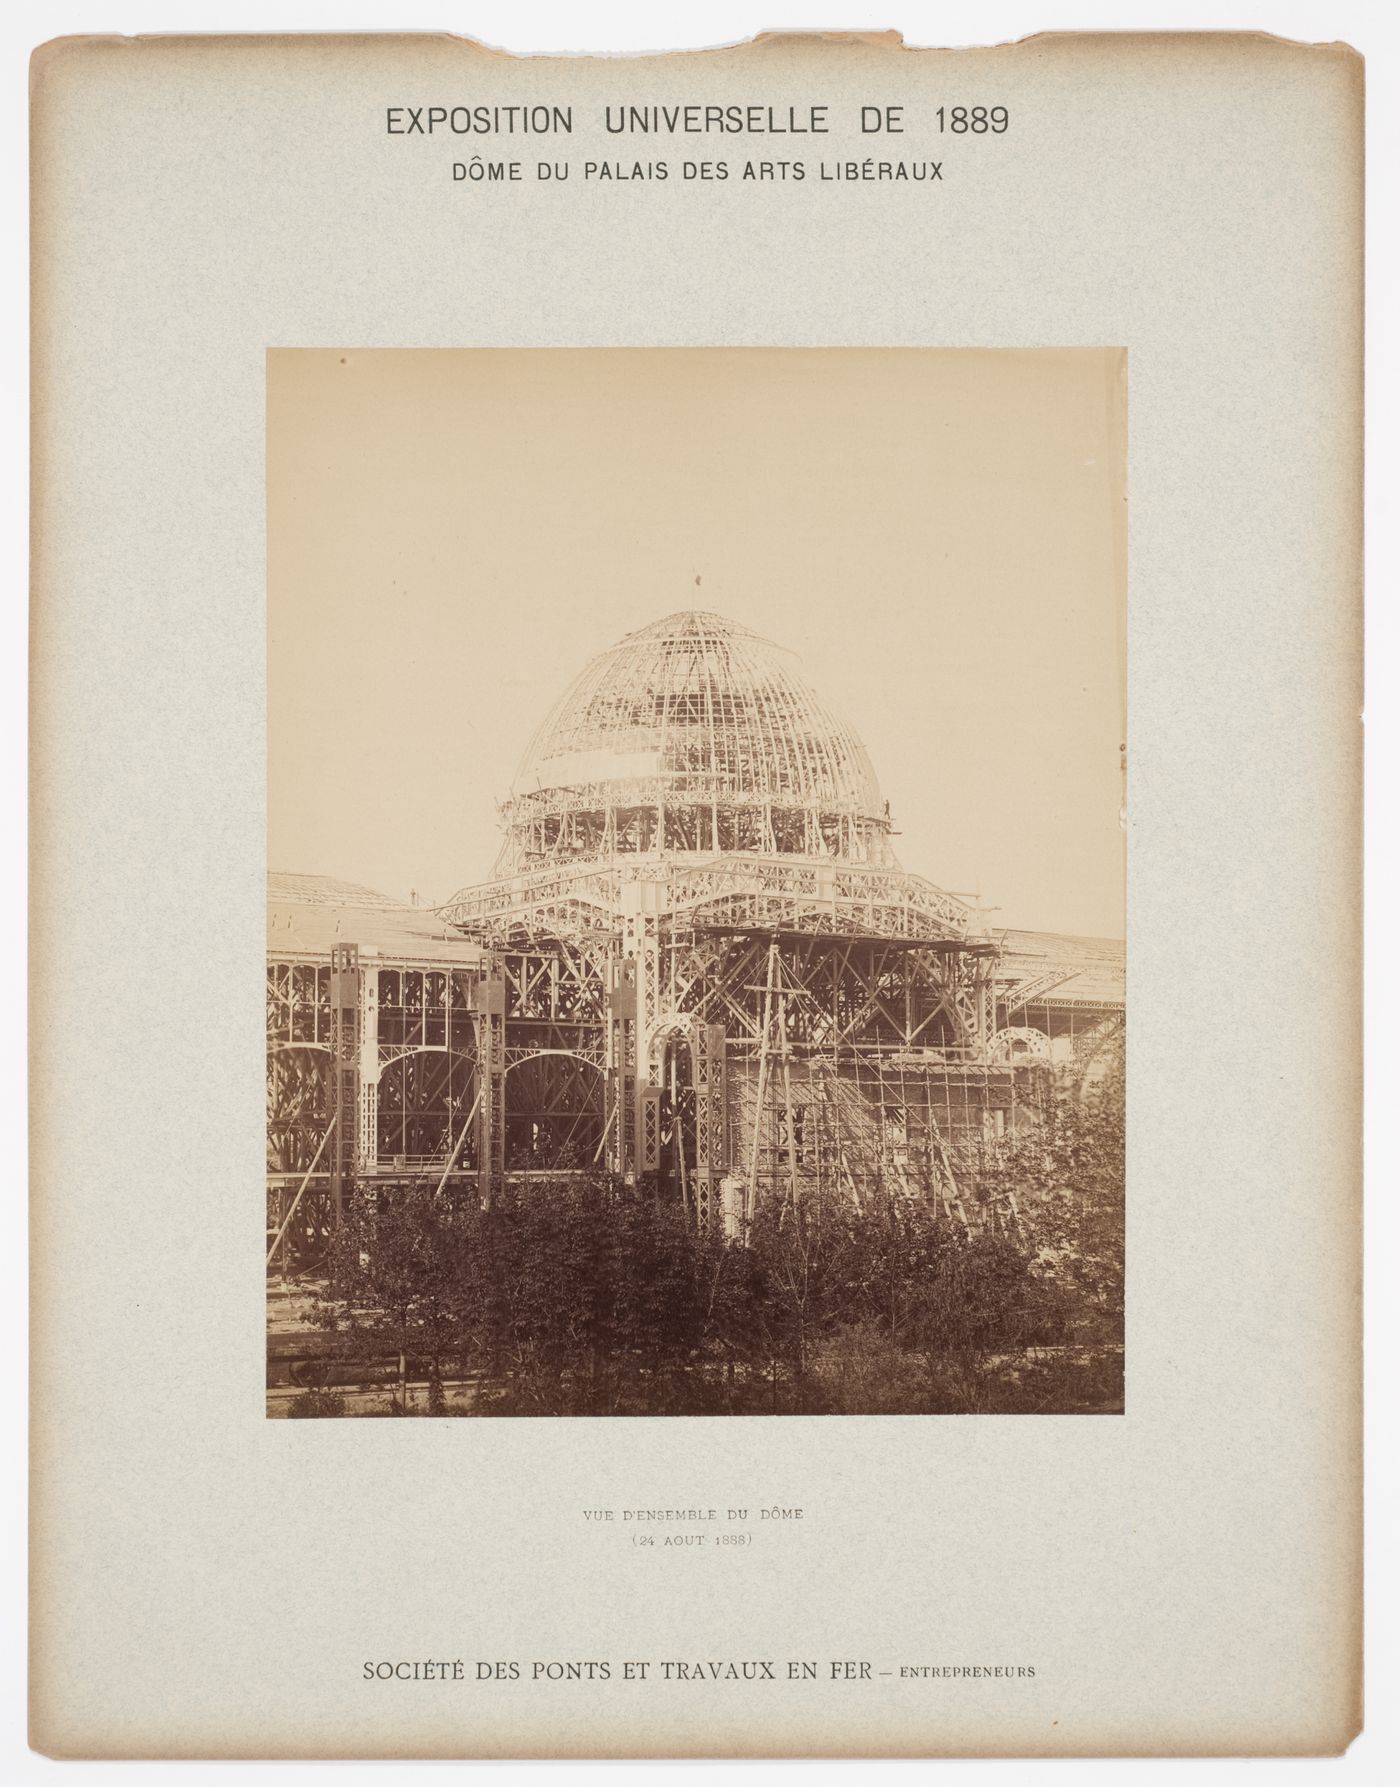 View of Dome du Palais des Beaux Arts under construction, Exposition Universelle de 1889, Paris, France